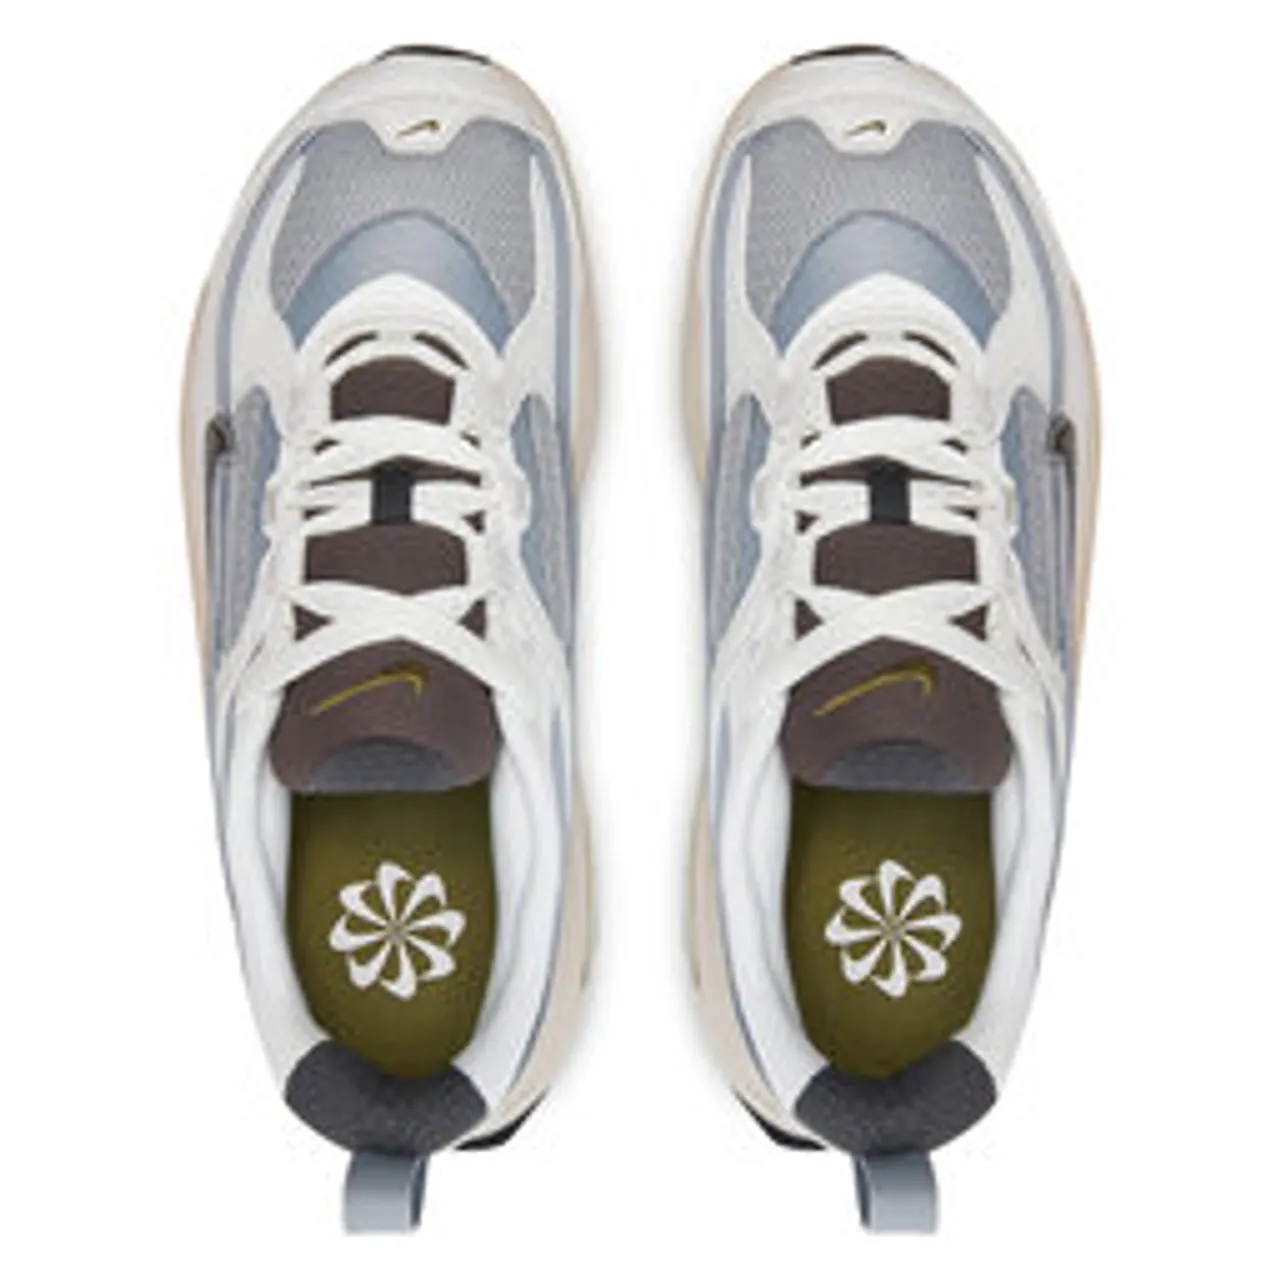 Sneakers Nike Air Max Bliss Nn DZ4707-001 Grau